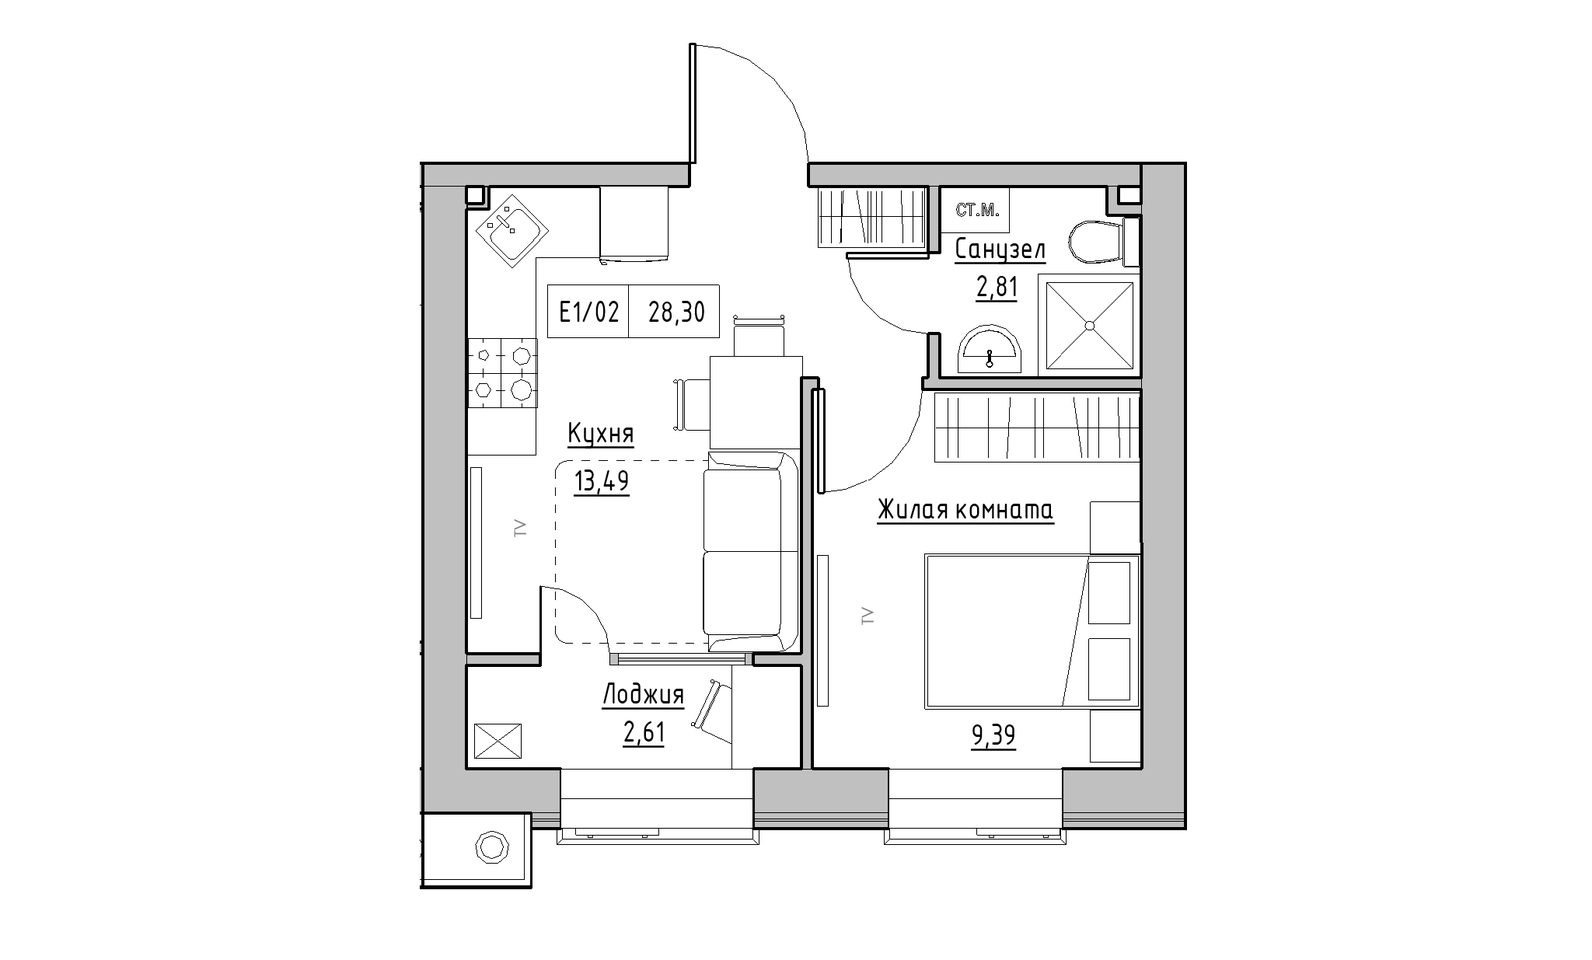 Планування 1-к квартира площею 28.3м2, KS-014-02/0001.